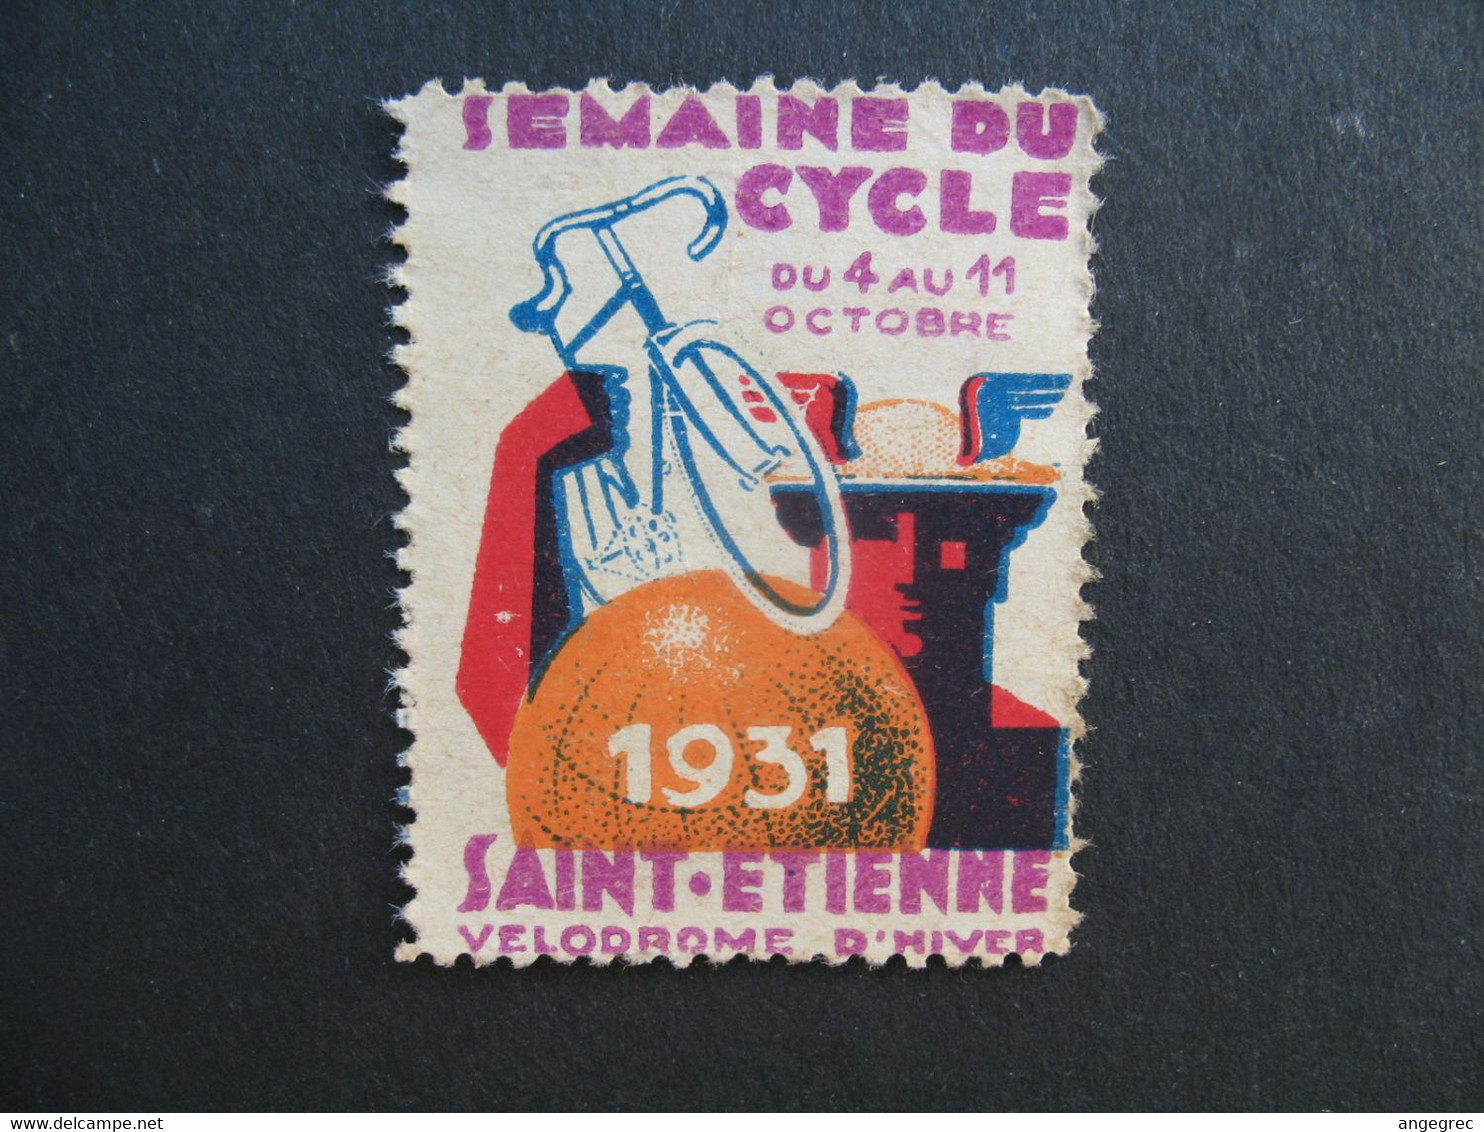 Vignette  1931 Semaine Du Cycle Saint-Etienne Vélodrome D'hiver - Sport